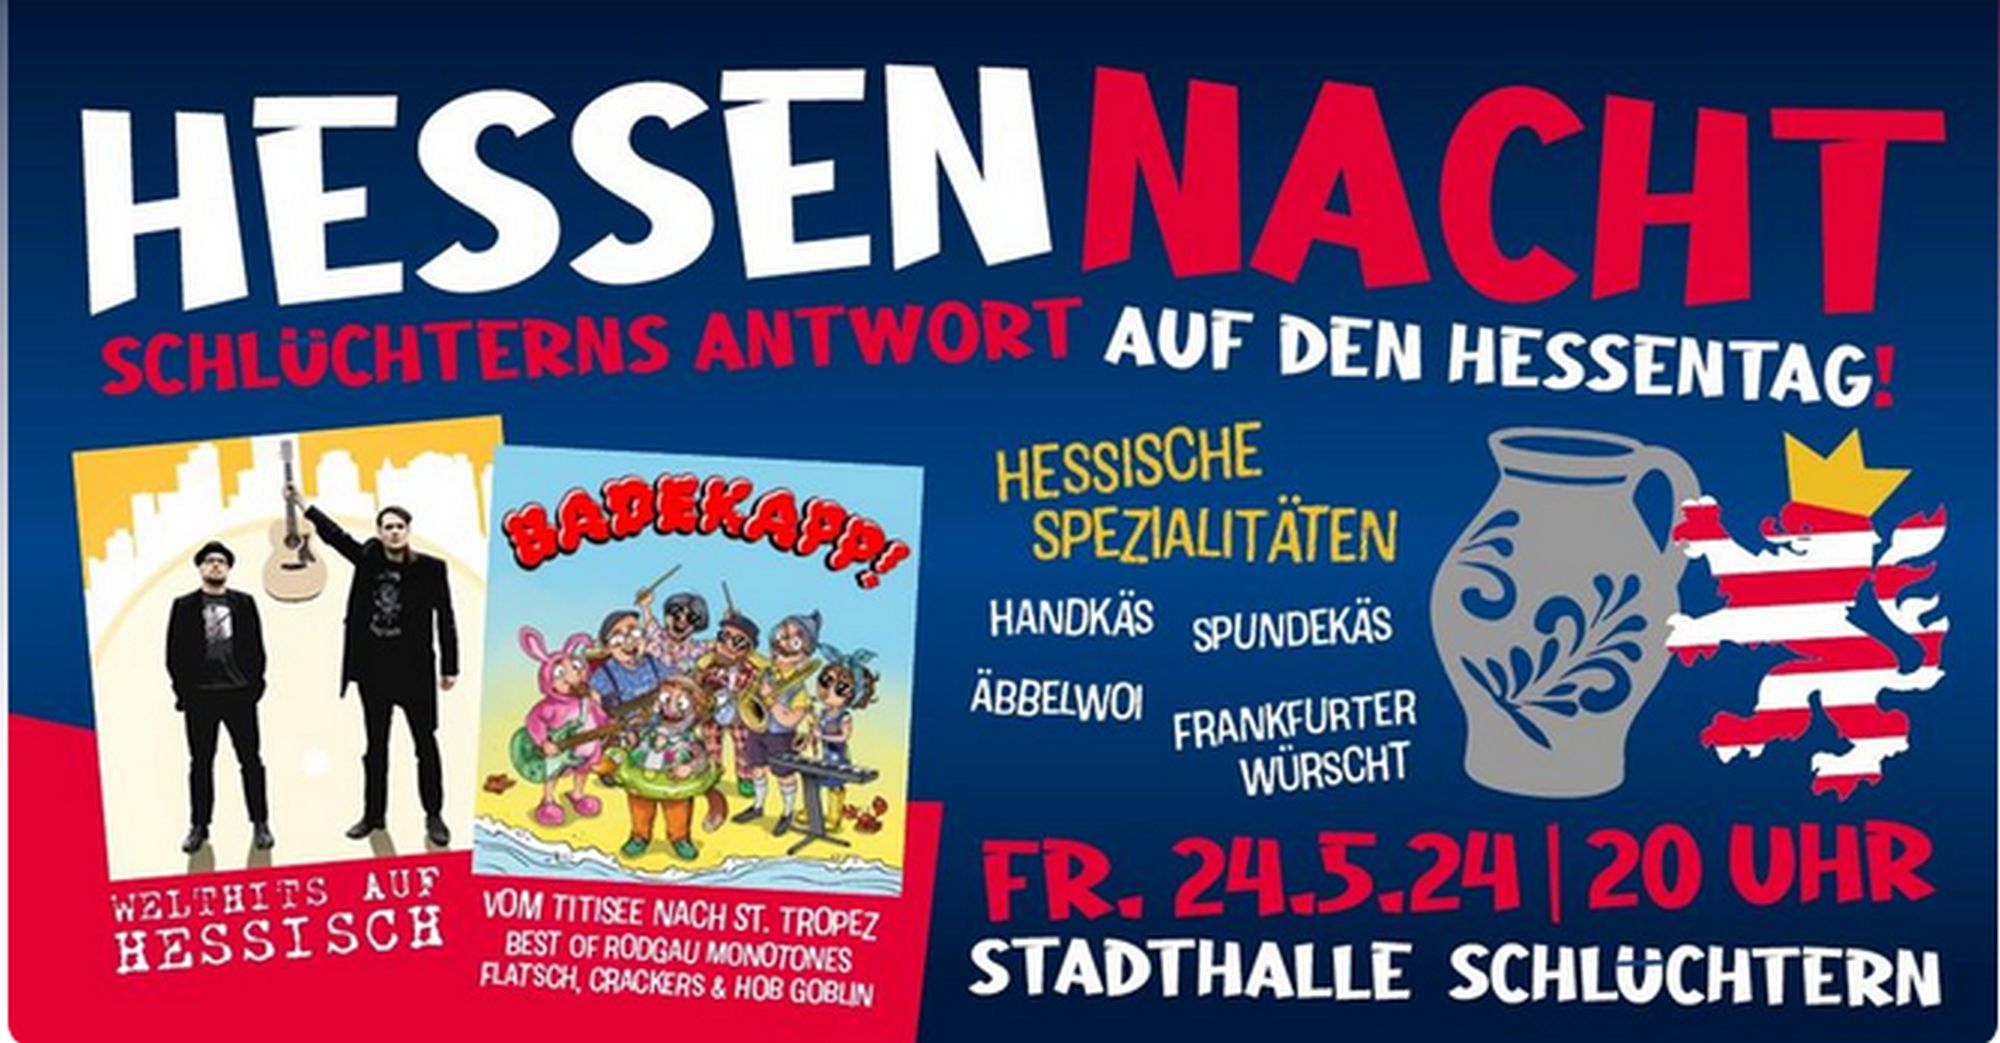 HESSENNACHT - WELTHITS AUF HESSISCH + BADEKAPP